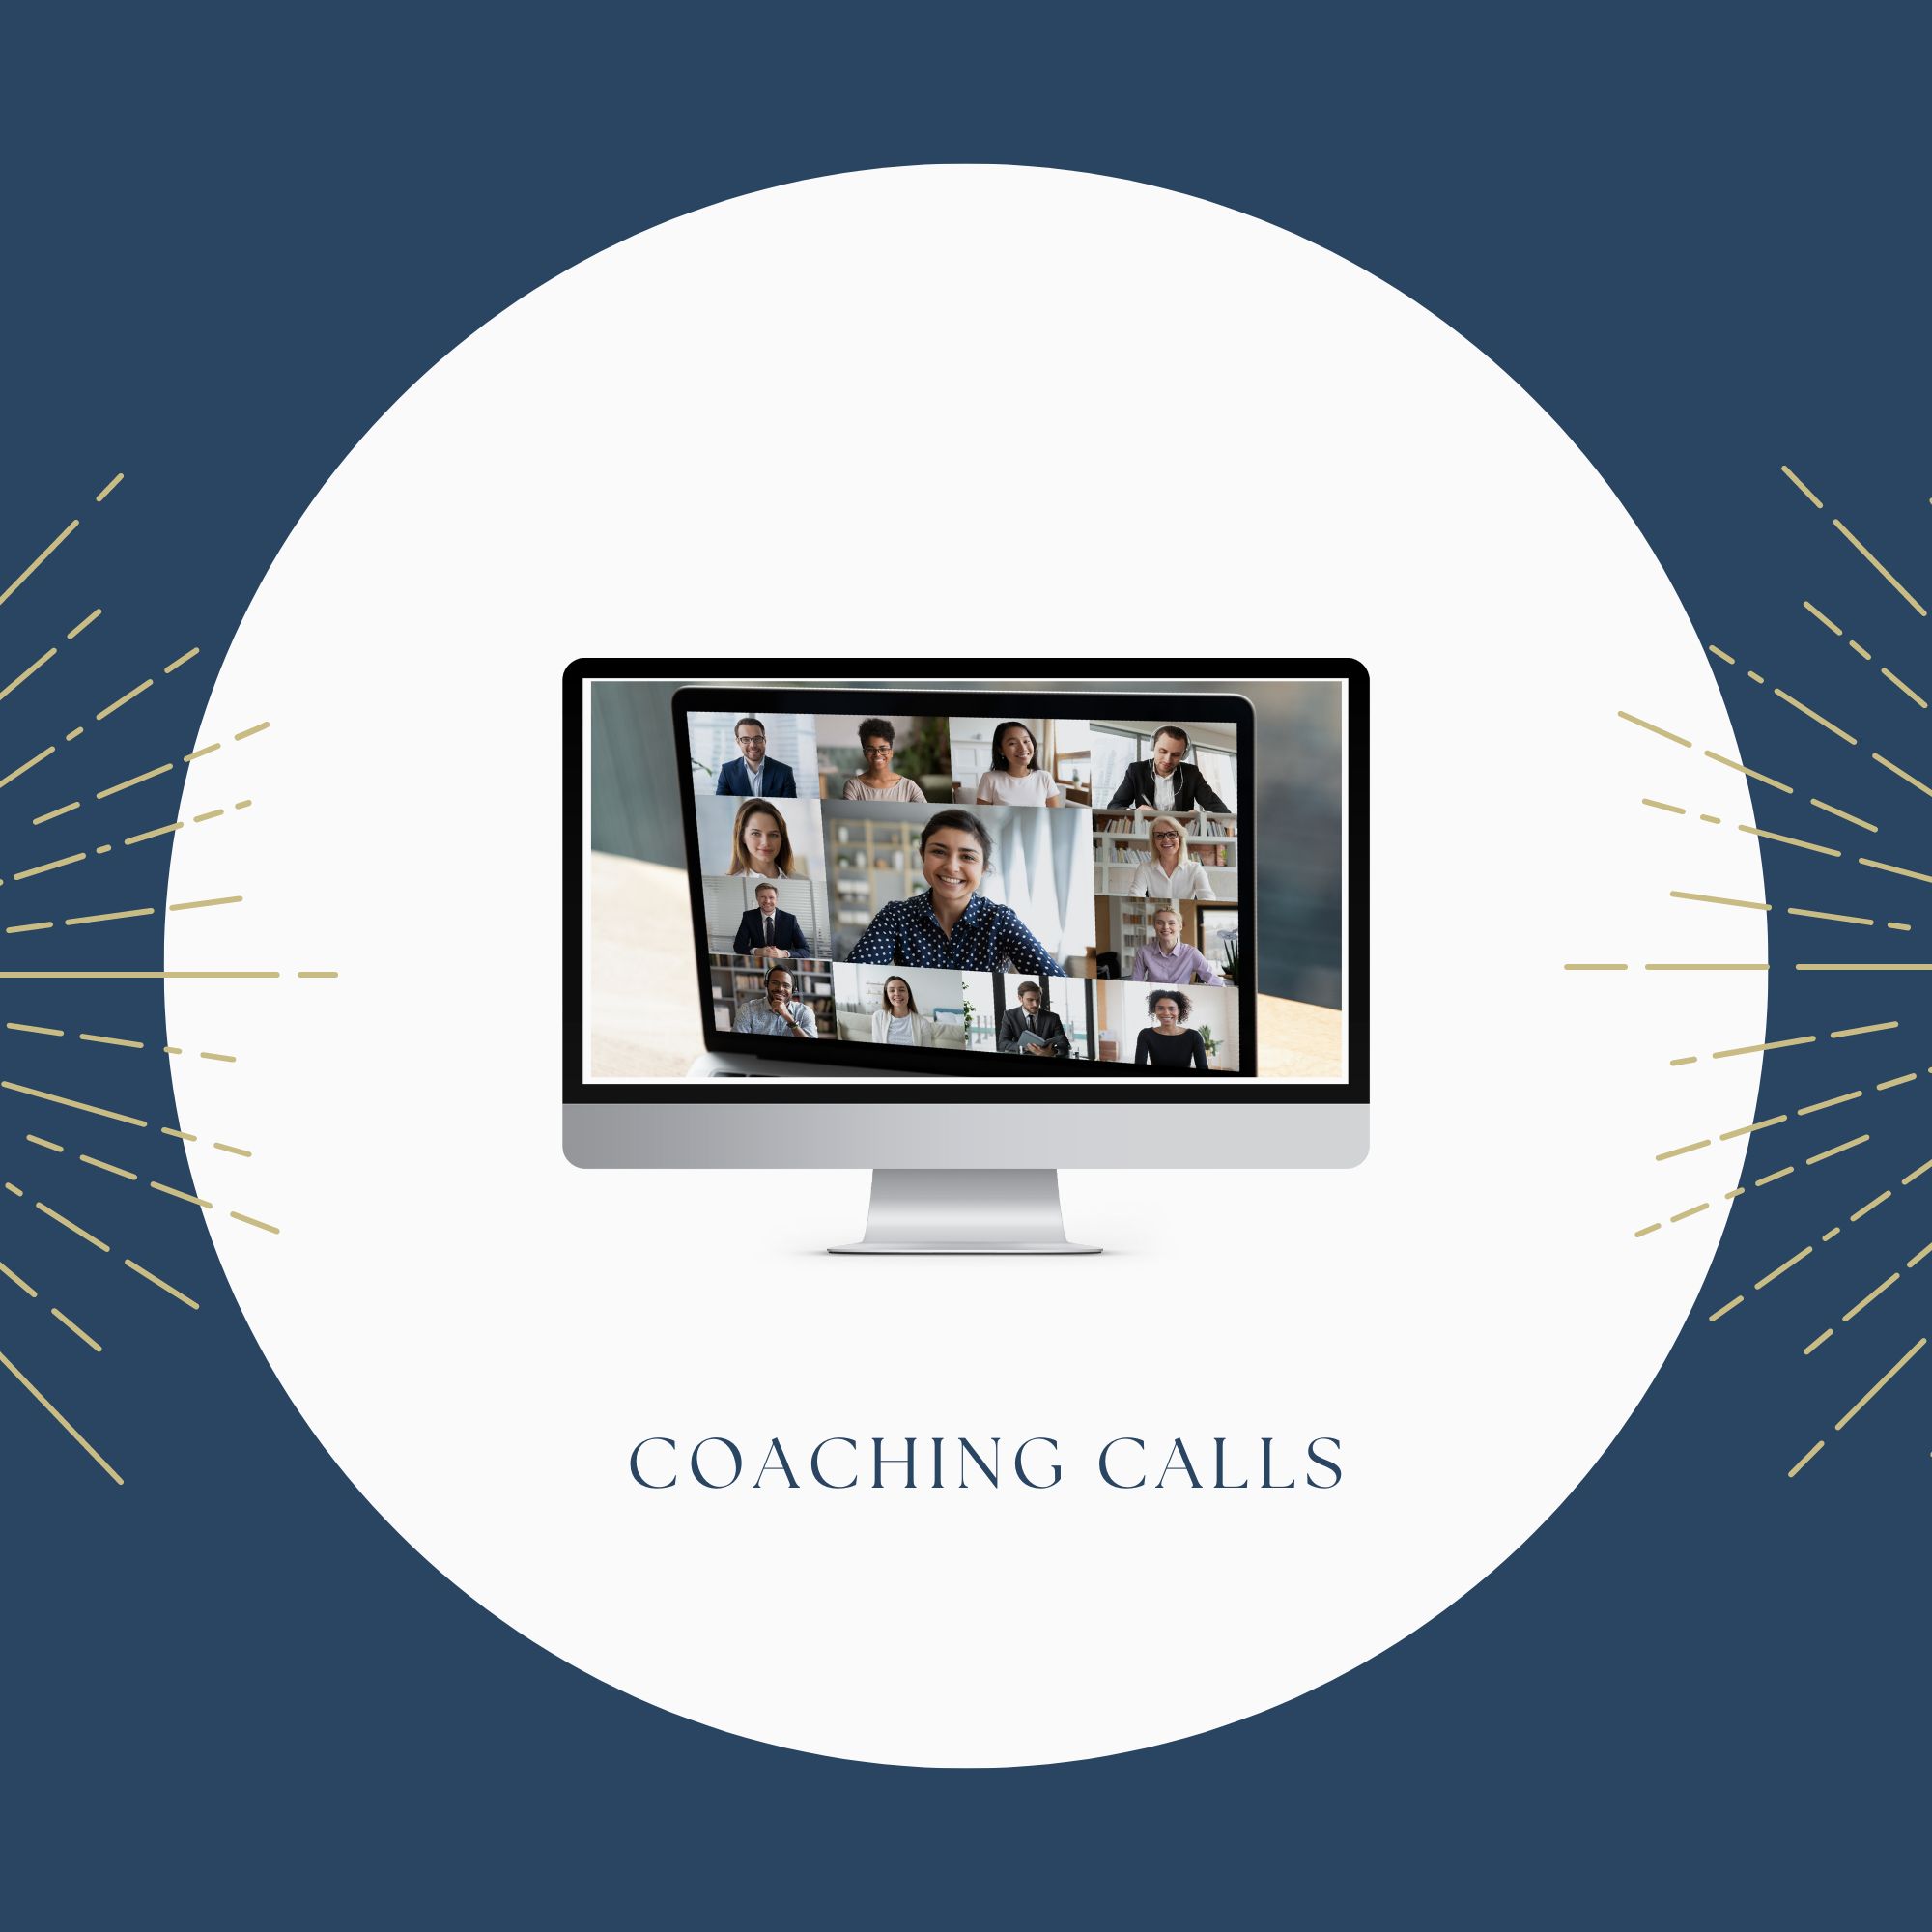 Coaching calls